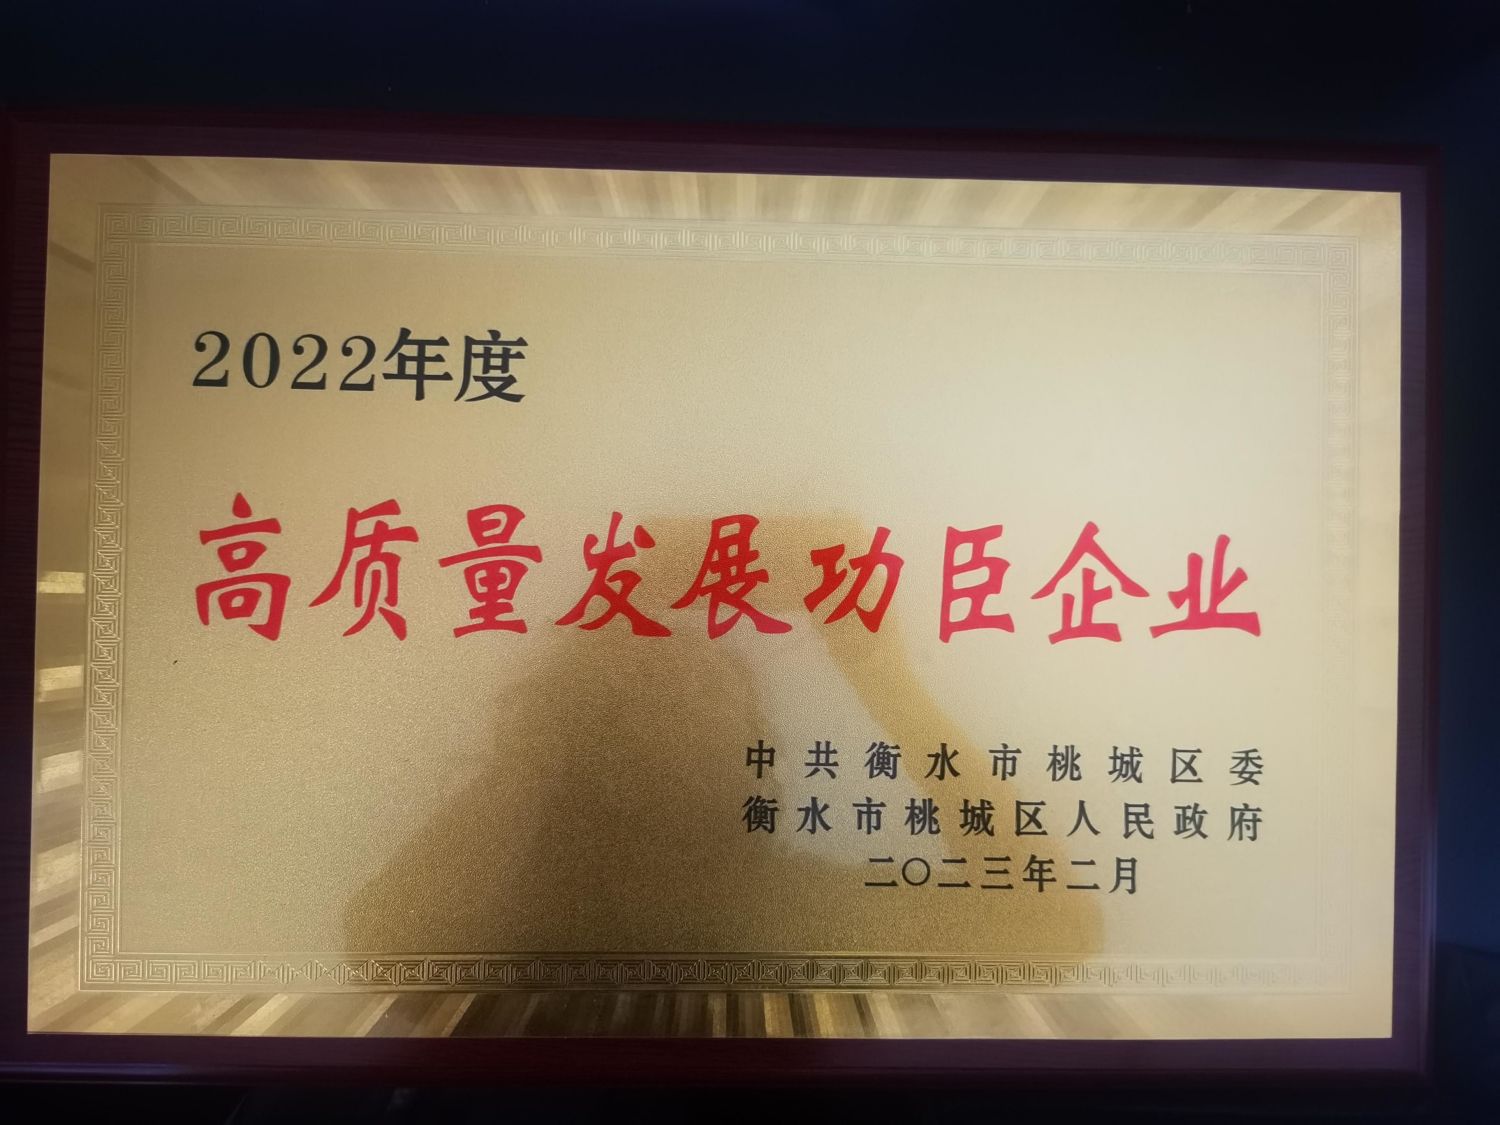 Parabéns à nossa empresa (Hengshui Tianqin Import and Export Trade Co., Ltd) por ganhar a empresa de desenvolvimento de alta qualidade em 2022.